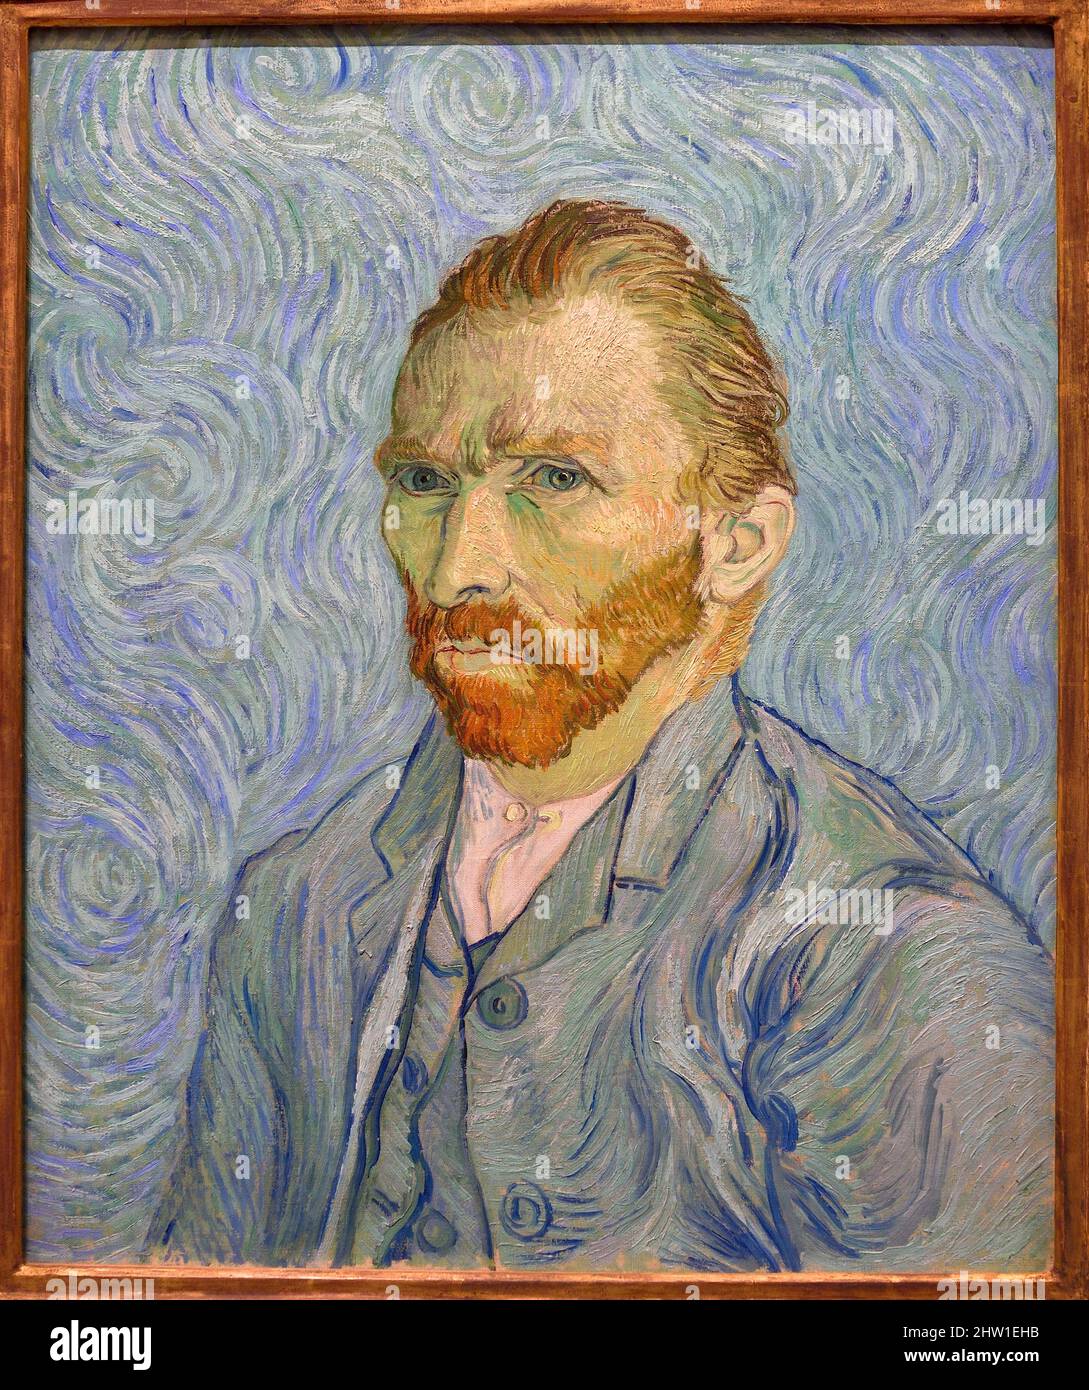 France, Paris, Orsay museum, L'Eglise d'Auvers-sur-Oise, portrait of the artist (1889) self-portrait of Vincent van Gogh Stock Photo